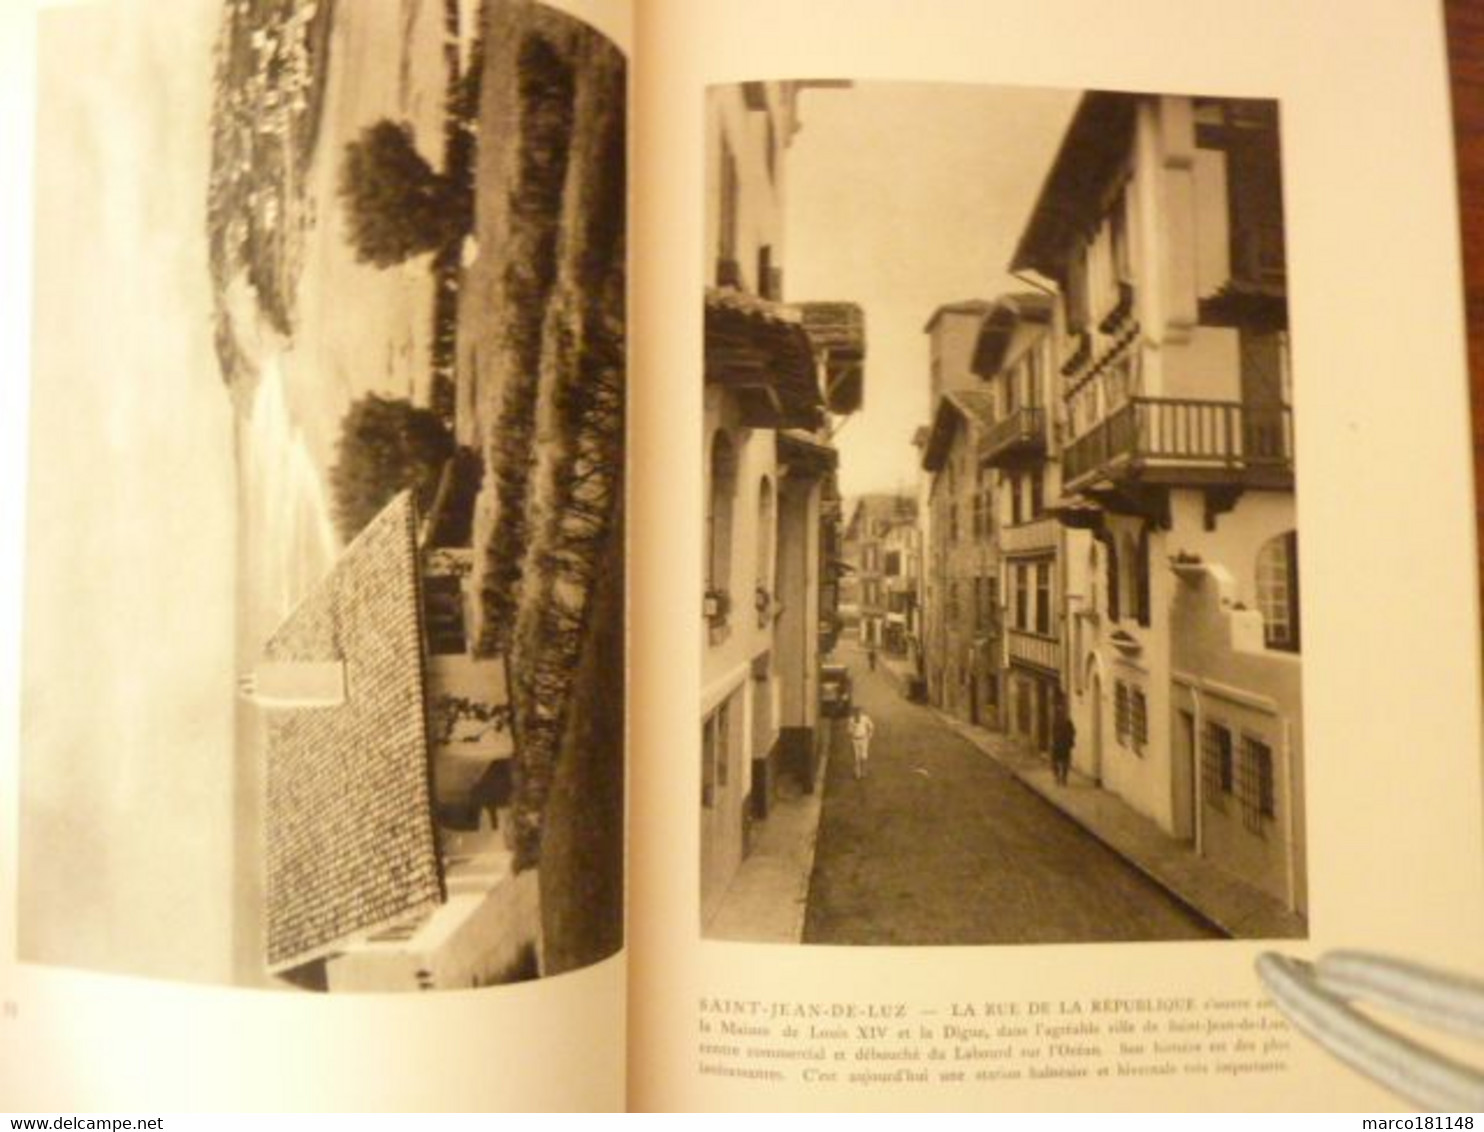 Bayonne - Biarritz - Pau et le Pays Basque - Visions de France - Editions G.L. ARLAUD - 1930